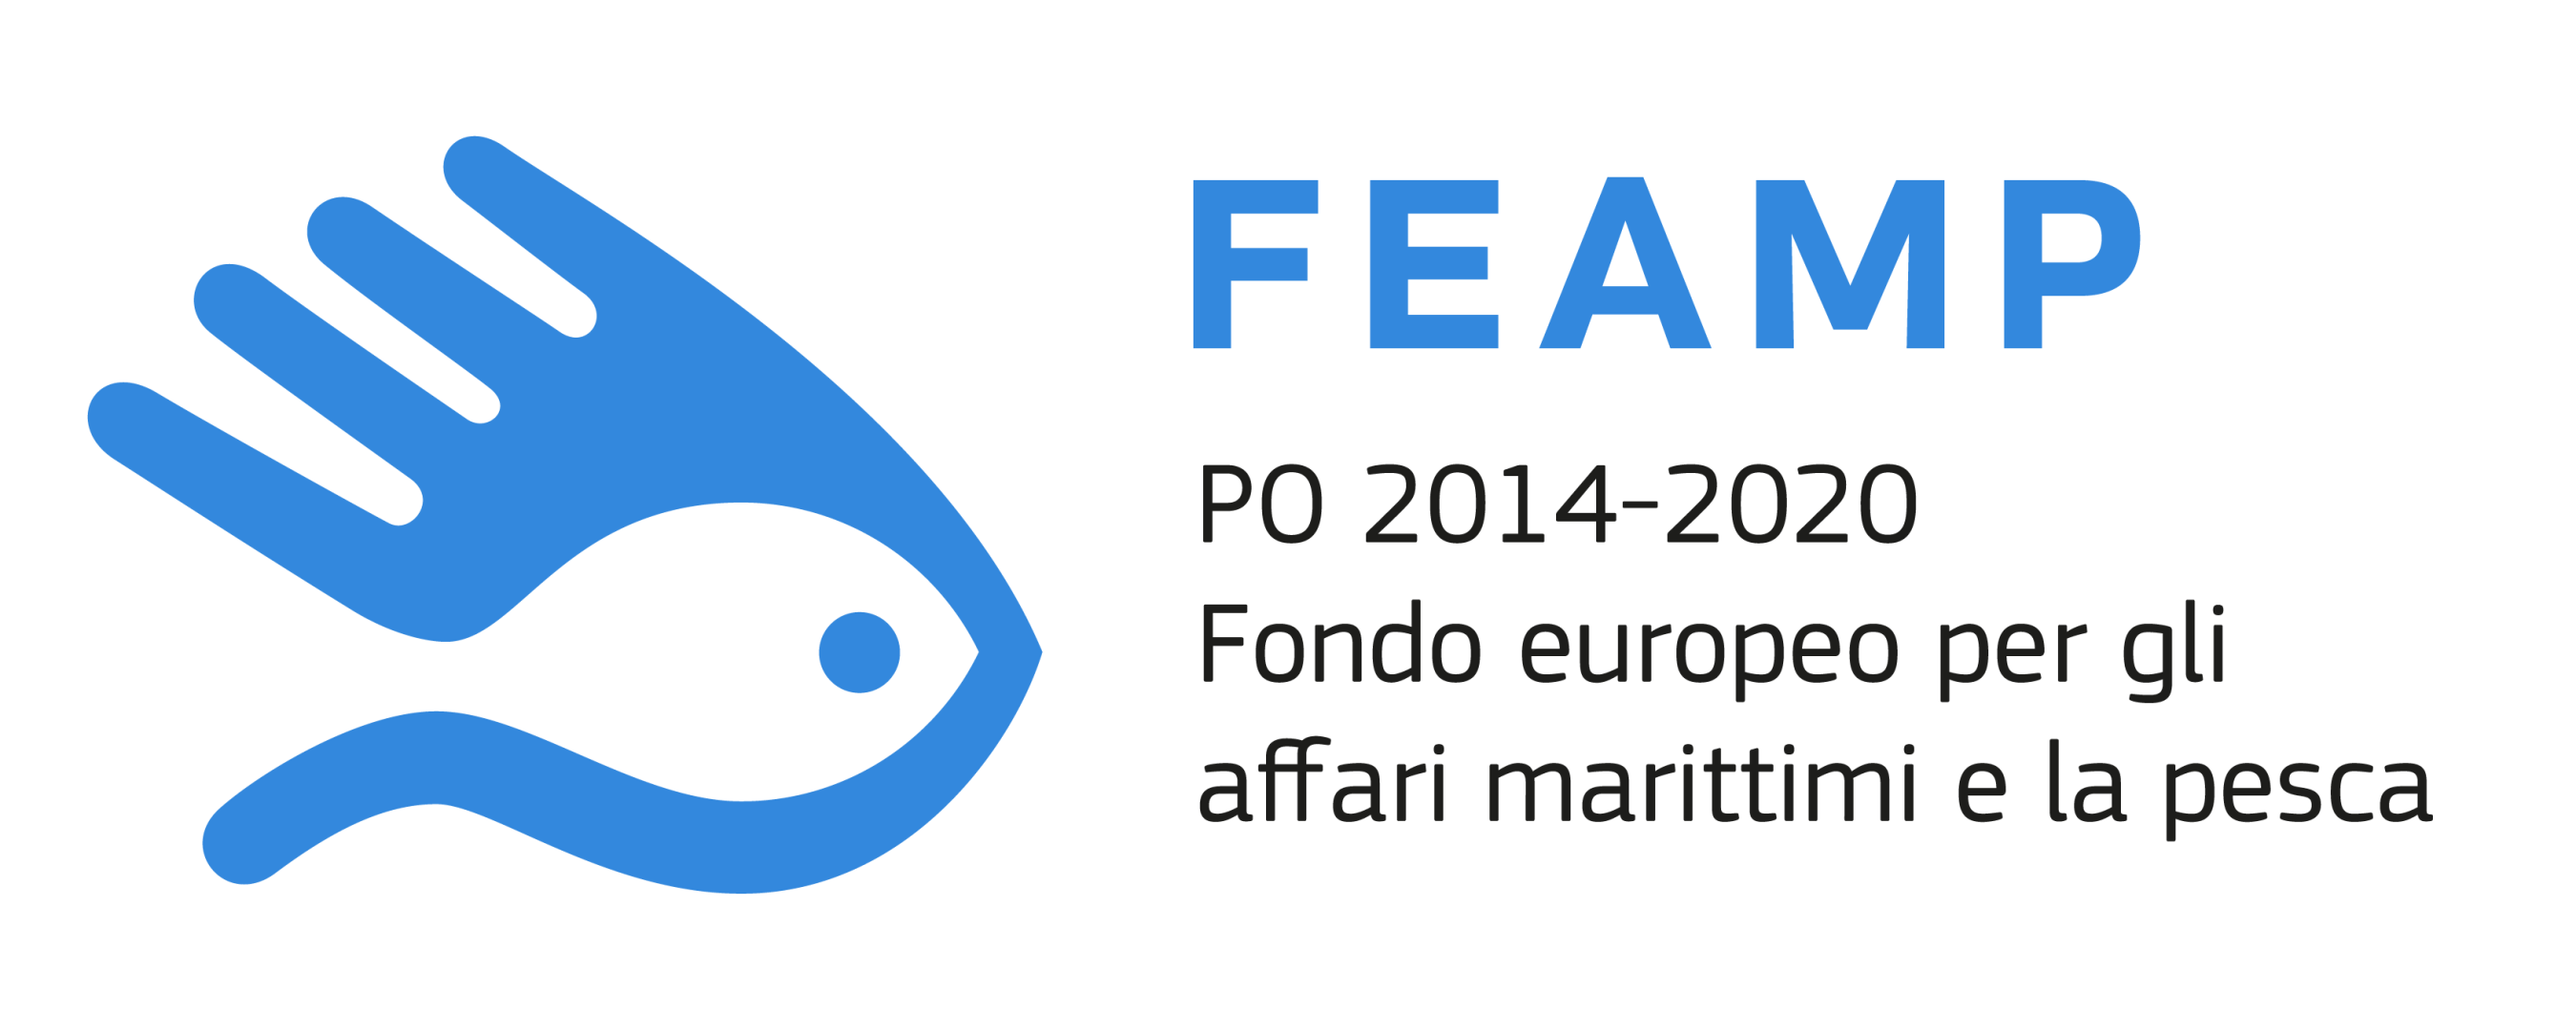 Feamp - Fondo Europeo per gli Affari Marittimi e la Pesca